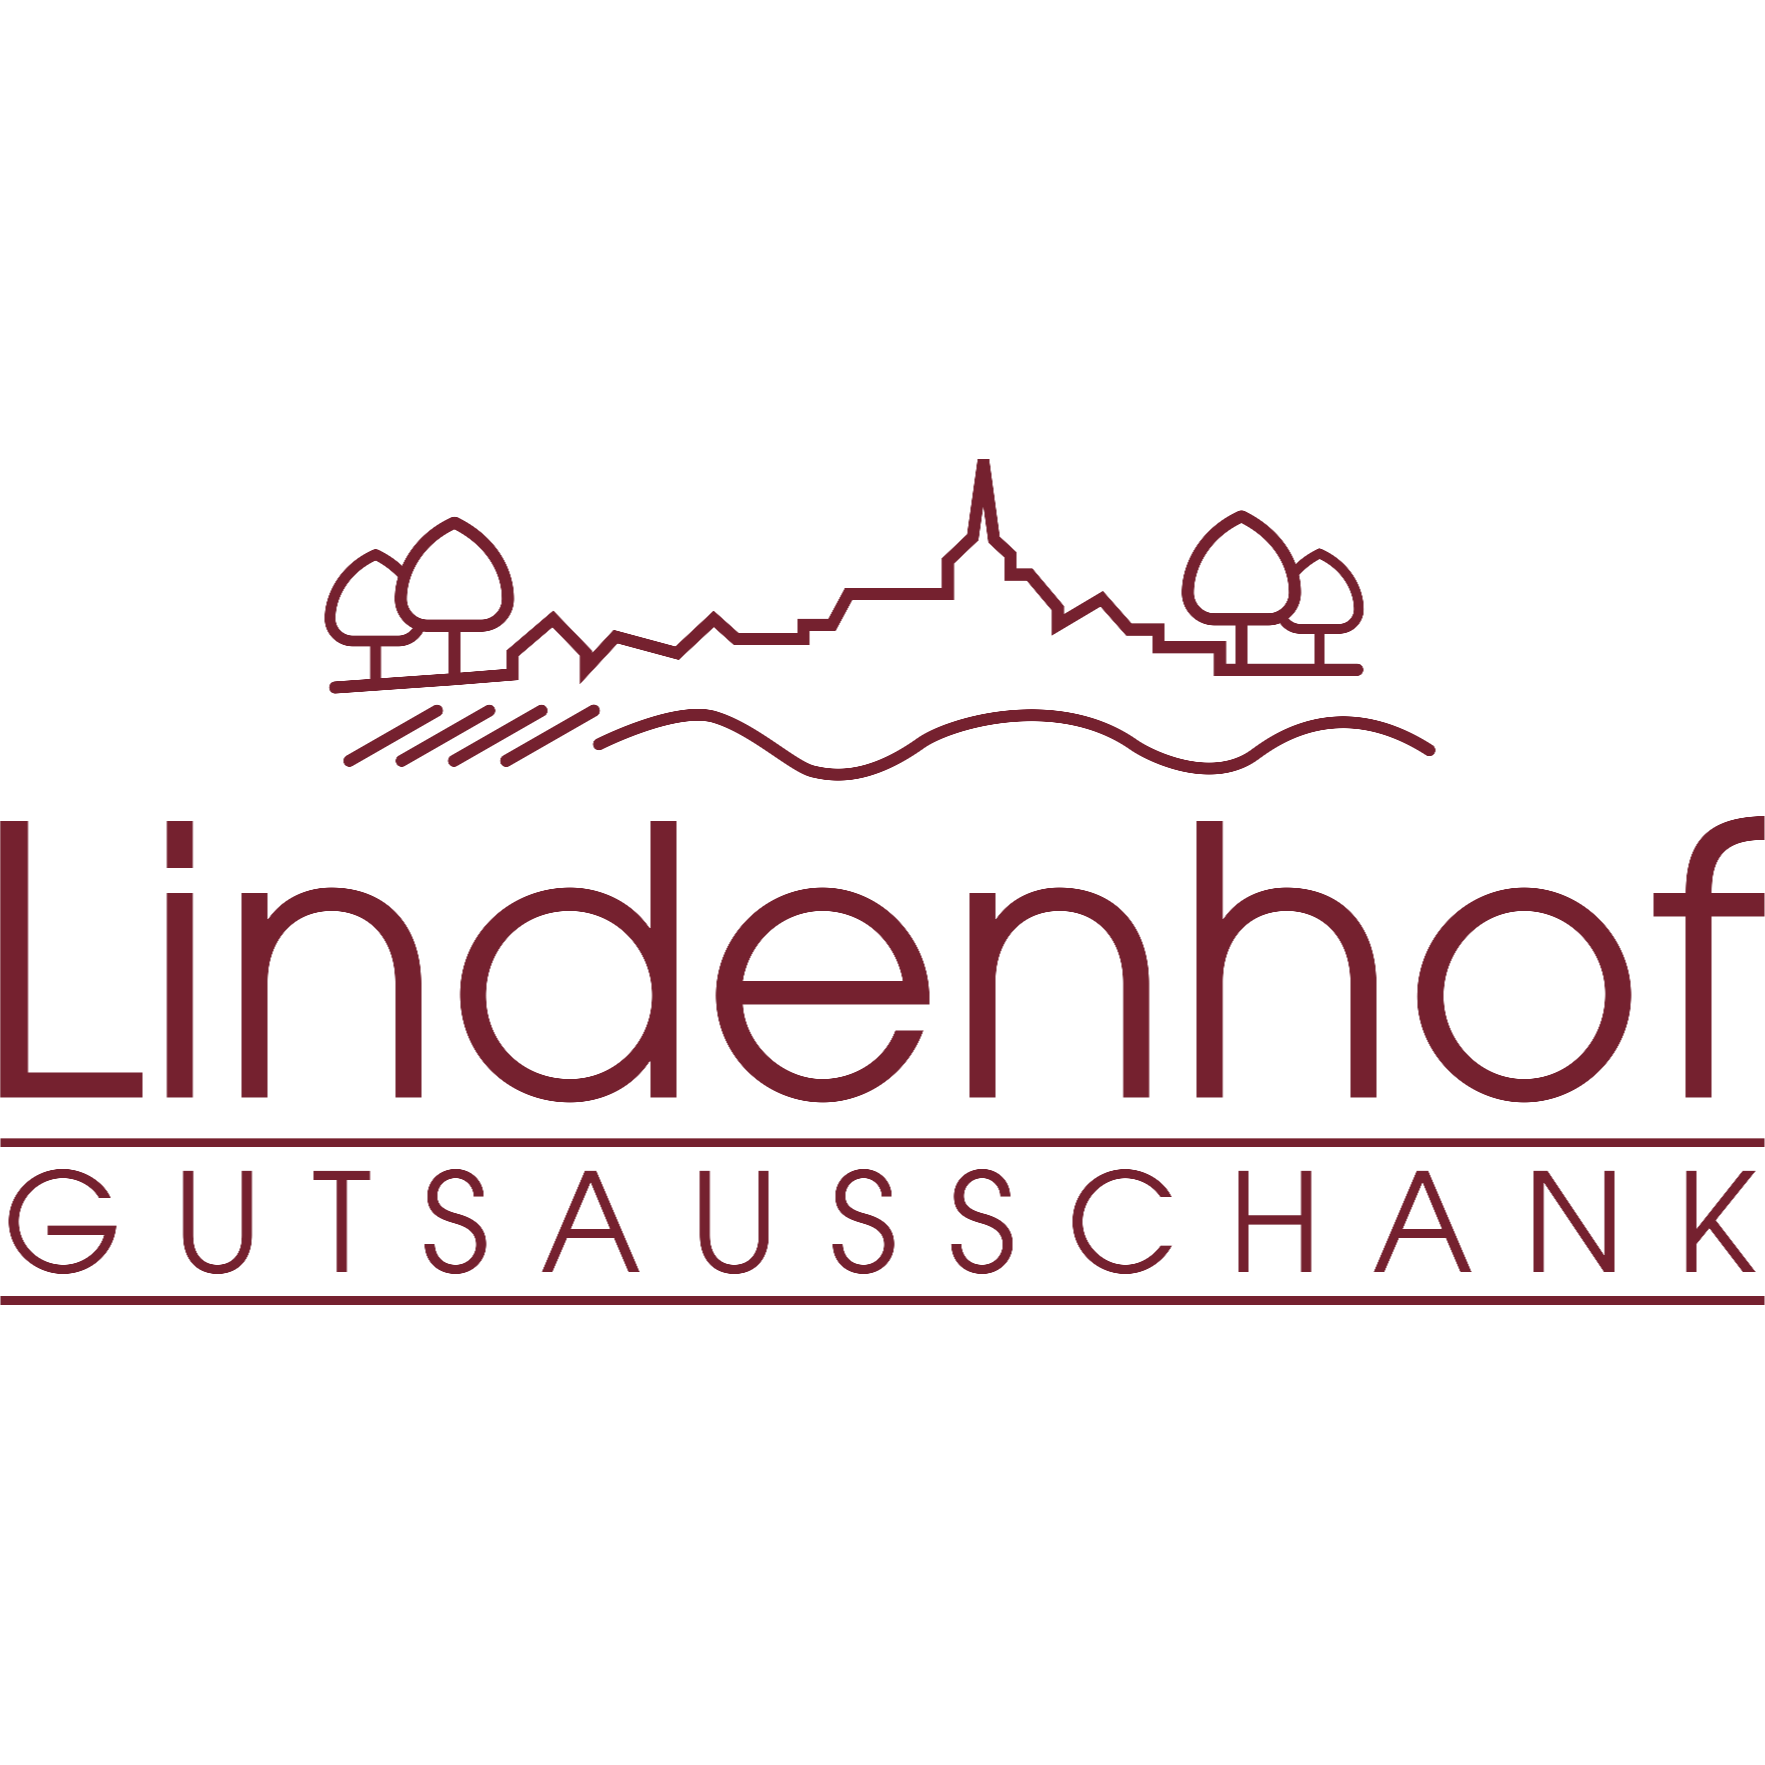 Gutsausschank Lindenhof Alfons Petry in Hochheim am Main - Logo